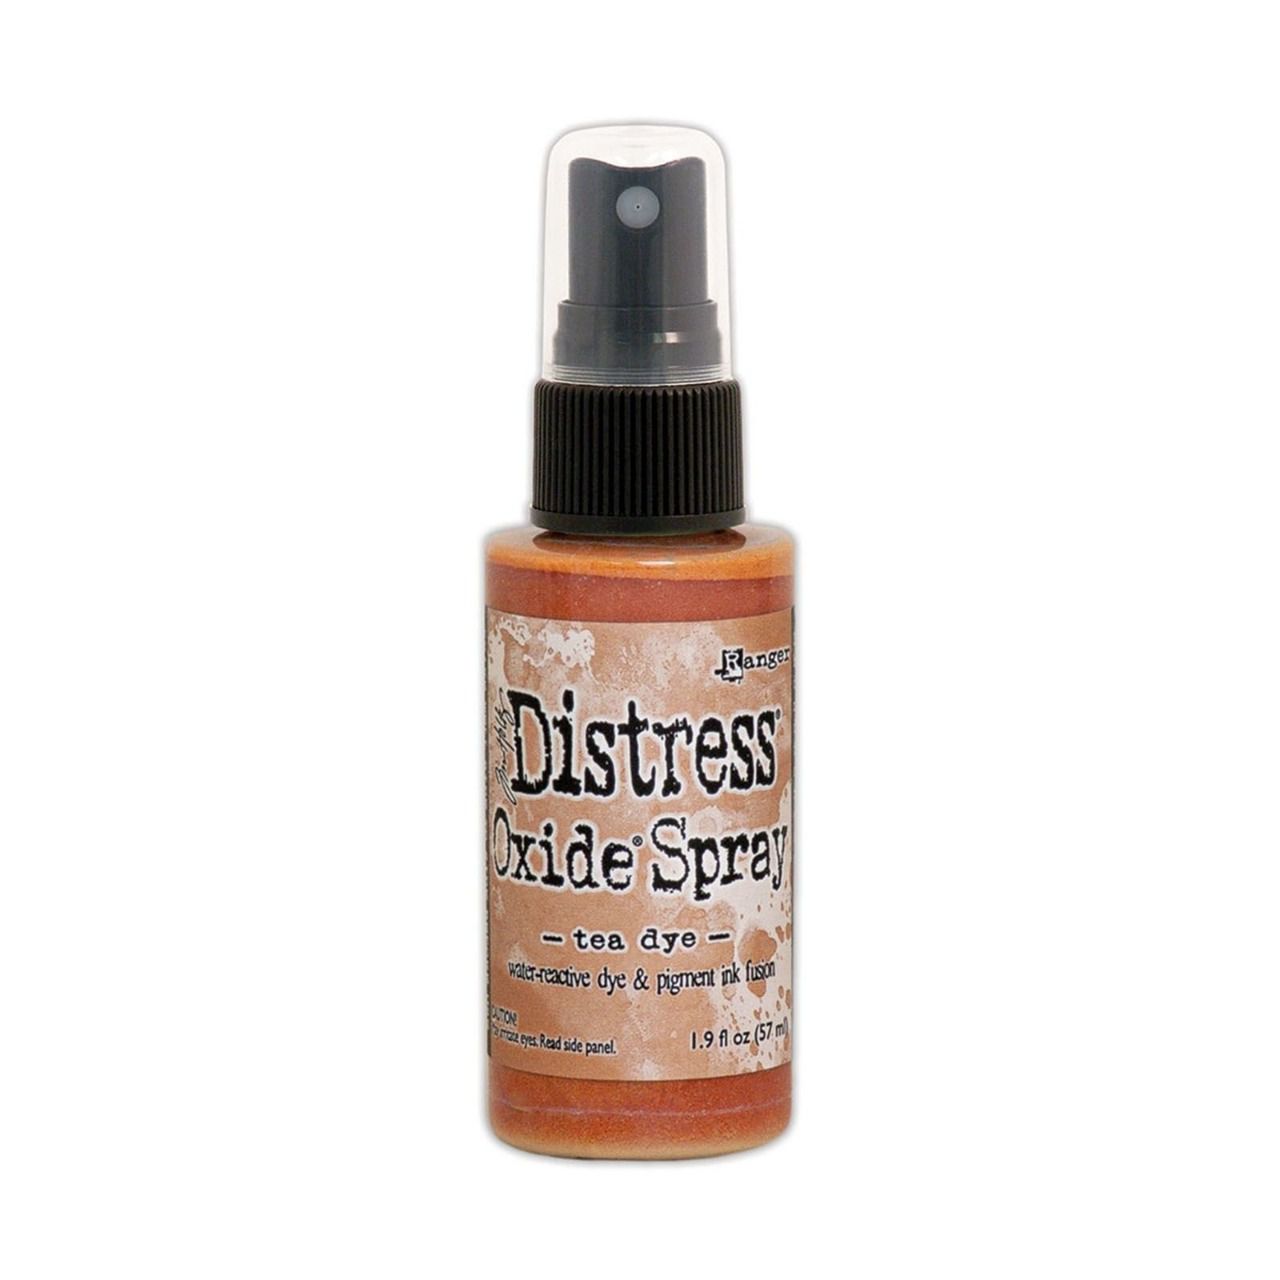 Distress spray oxide : Tea dye